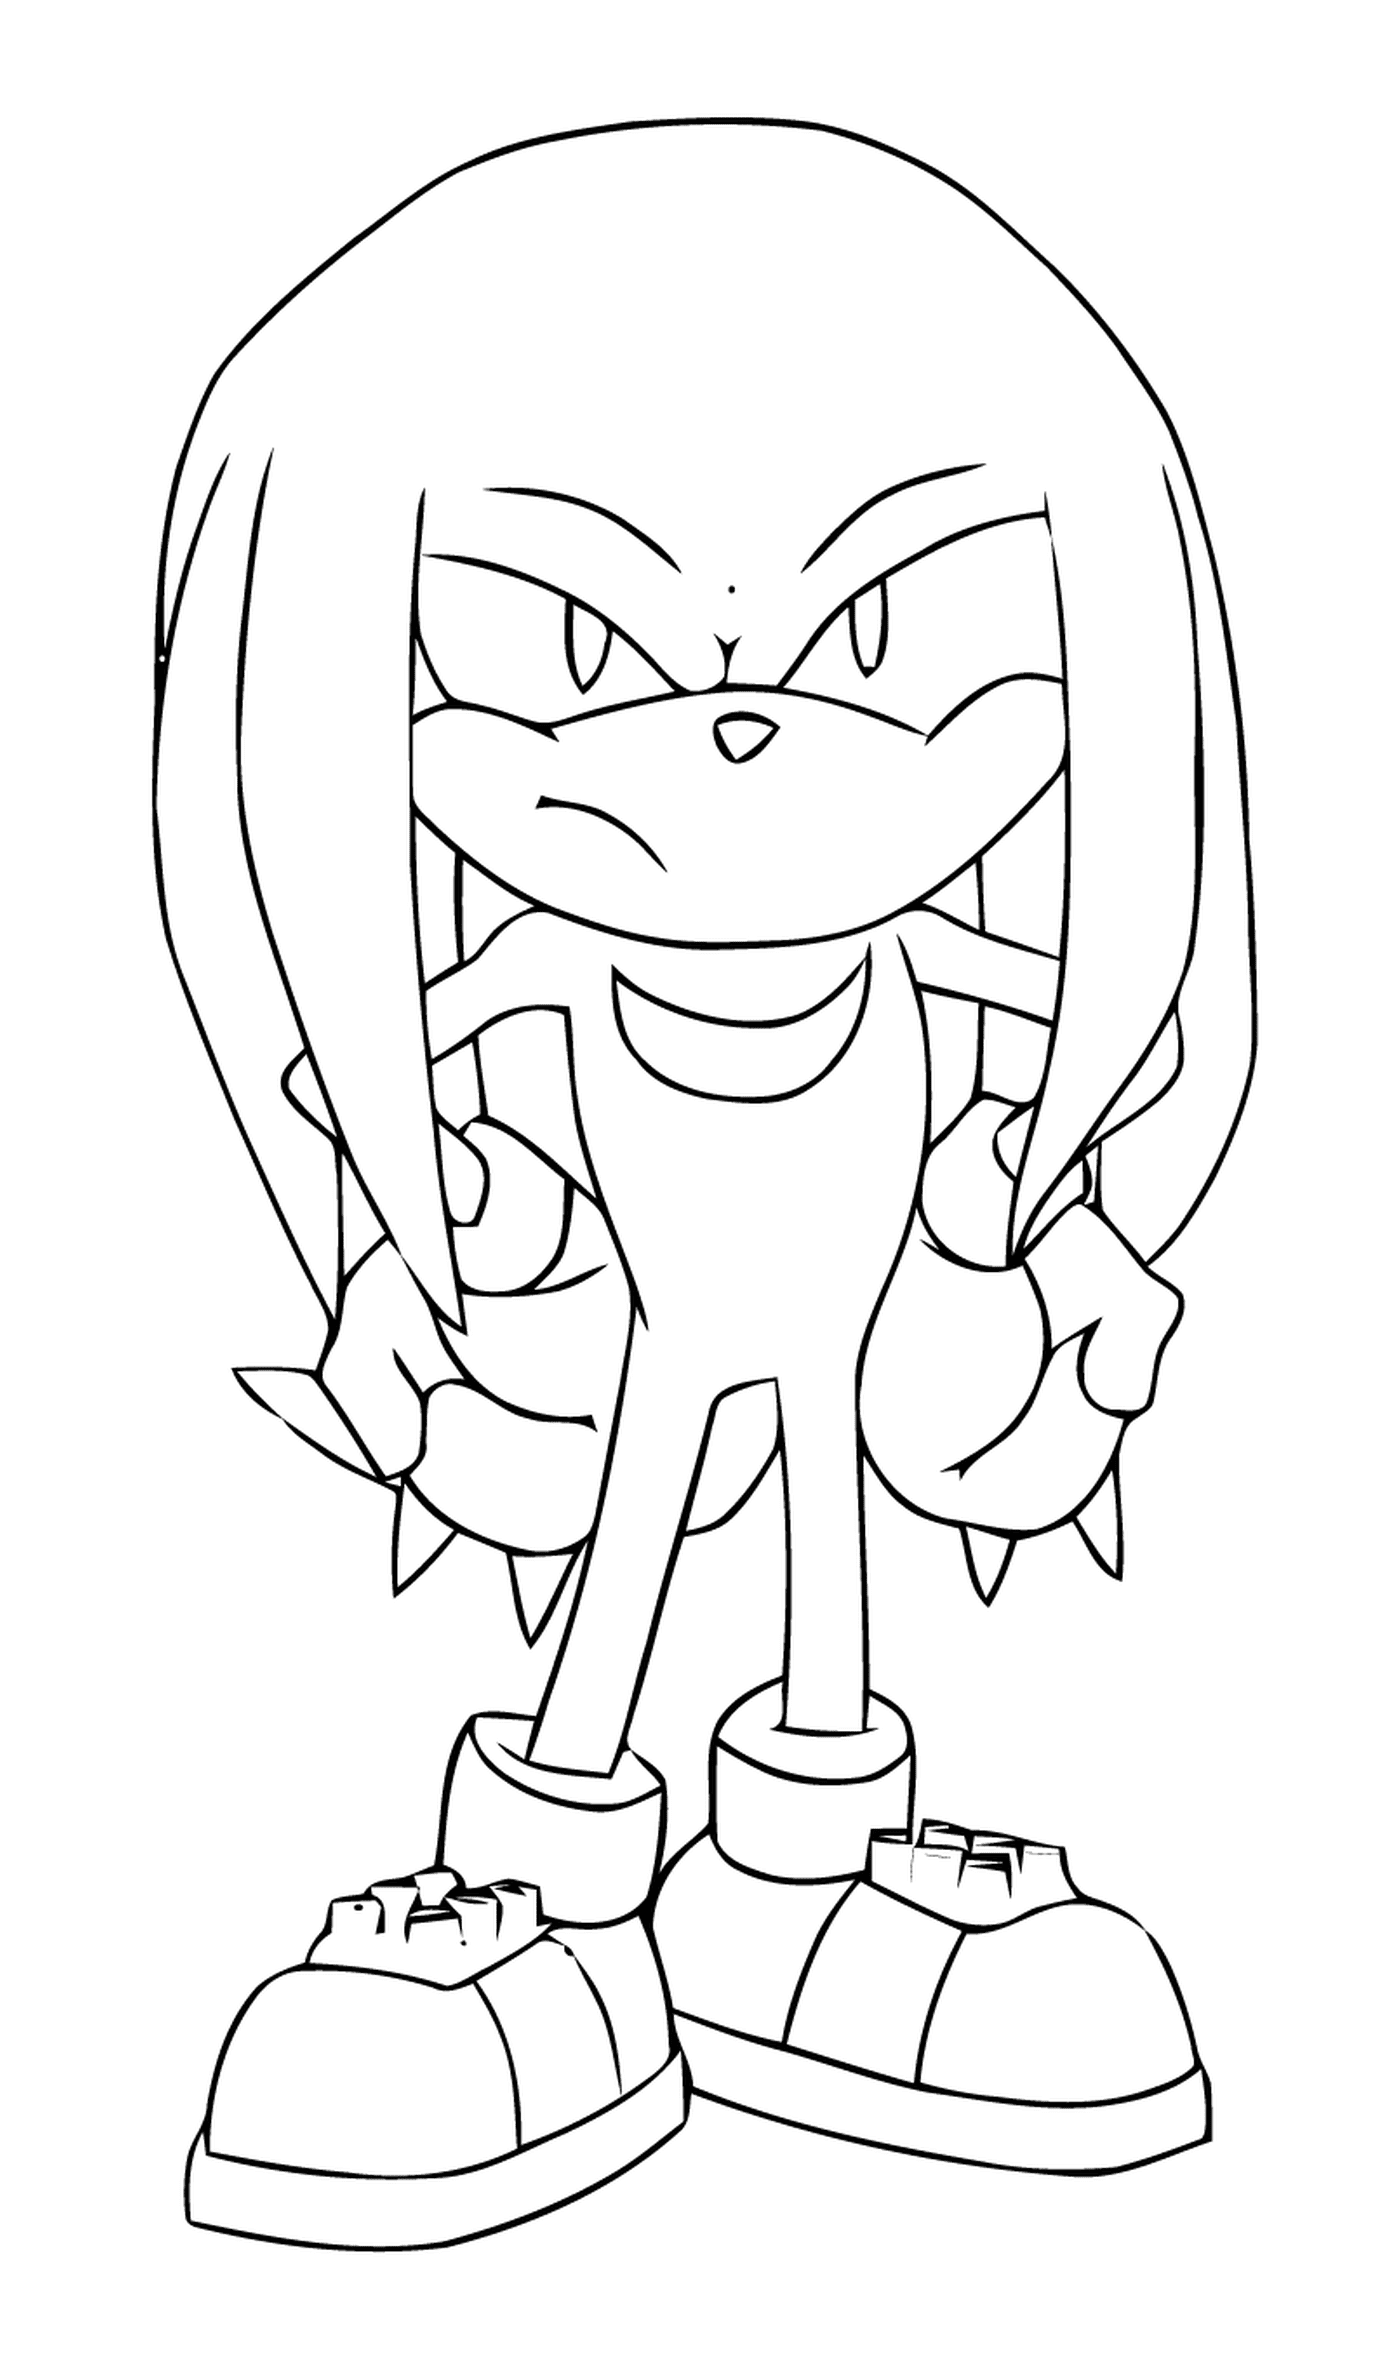  Sonic com uma expressão específica 